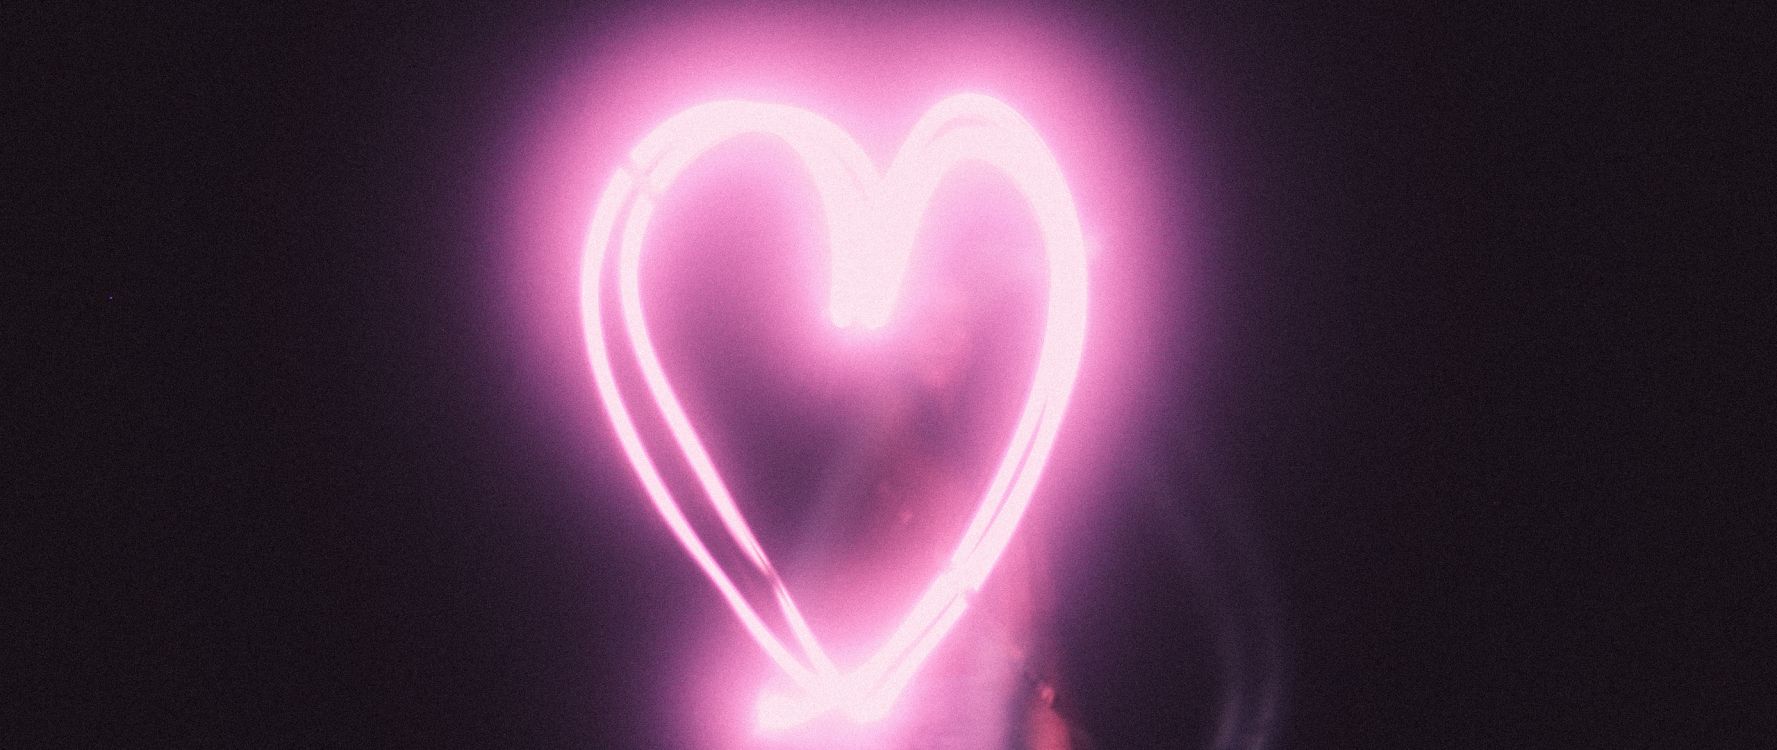 Licht, Pink, Herzen, Liebe, Neon. Wallpaper in 2560x1080 Resolution